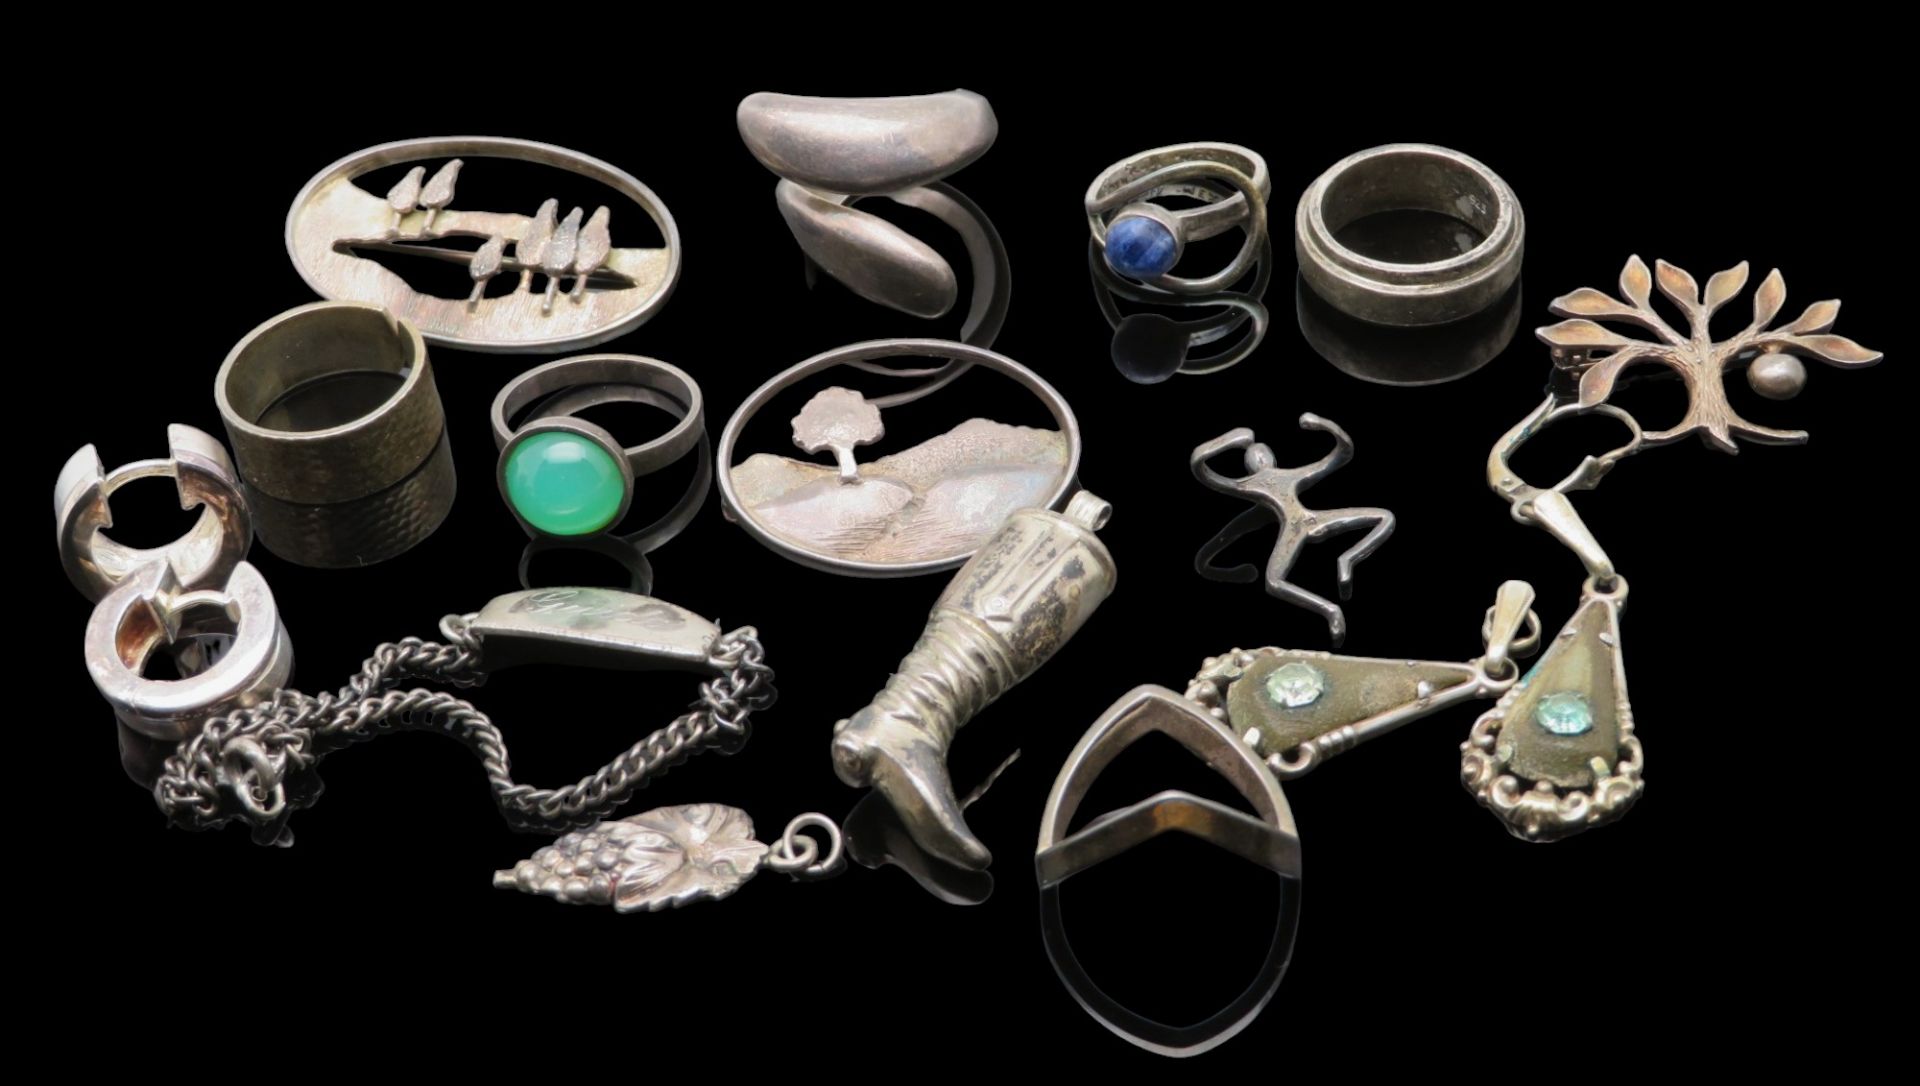 16 teiliges Konvolut diversen Silberschmucks, bestehend aus 6 Ringen, 3 Broschen, 4 Ohrhängern, 2 A